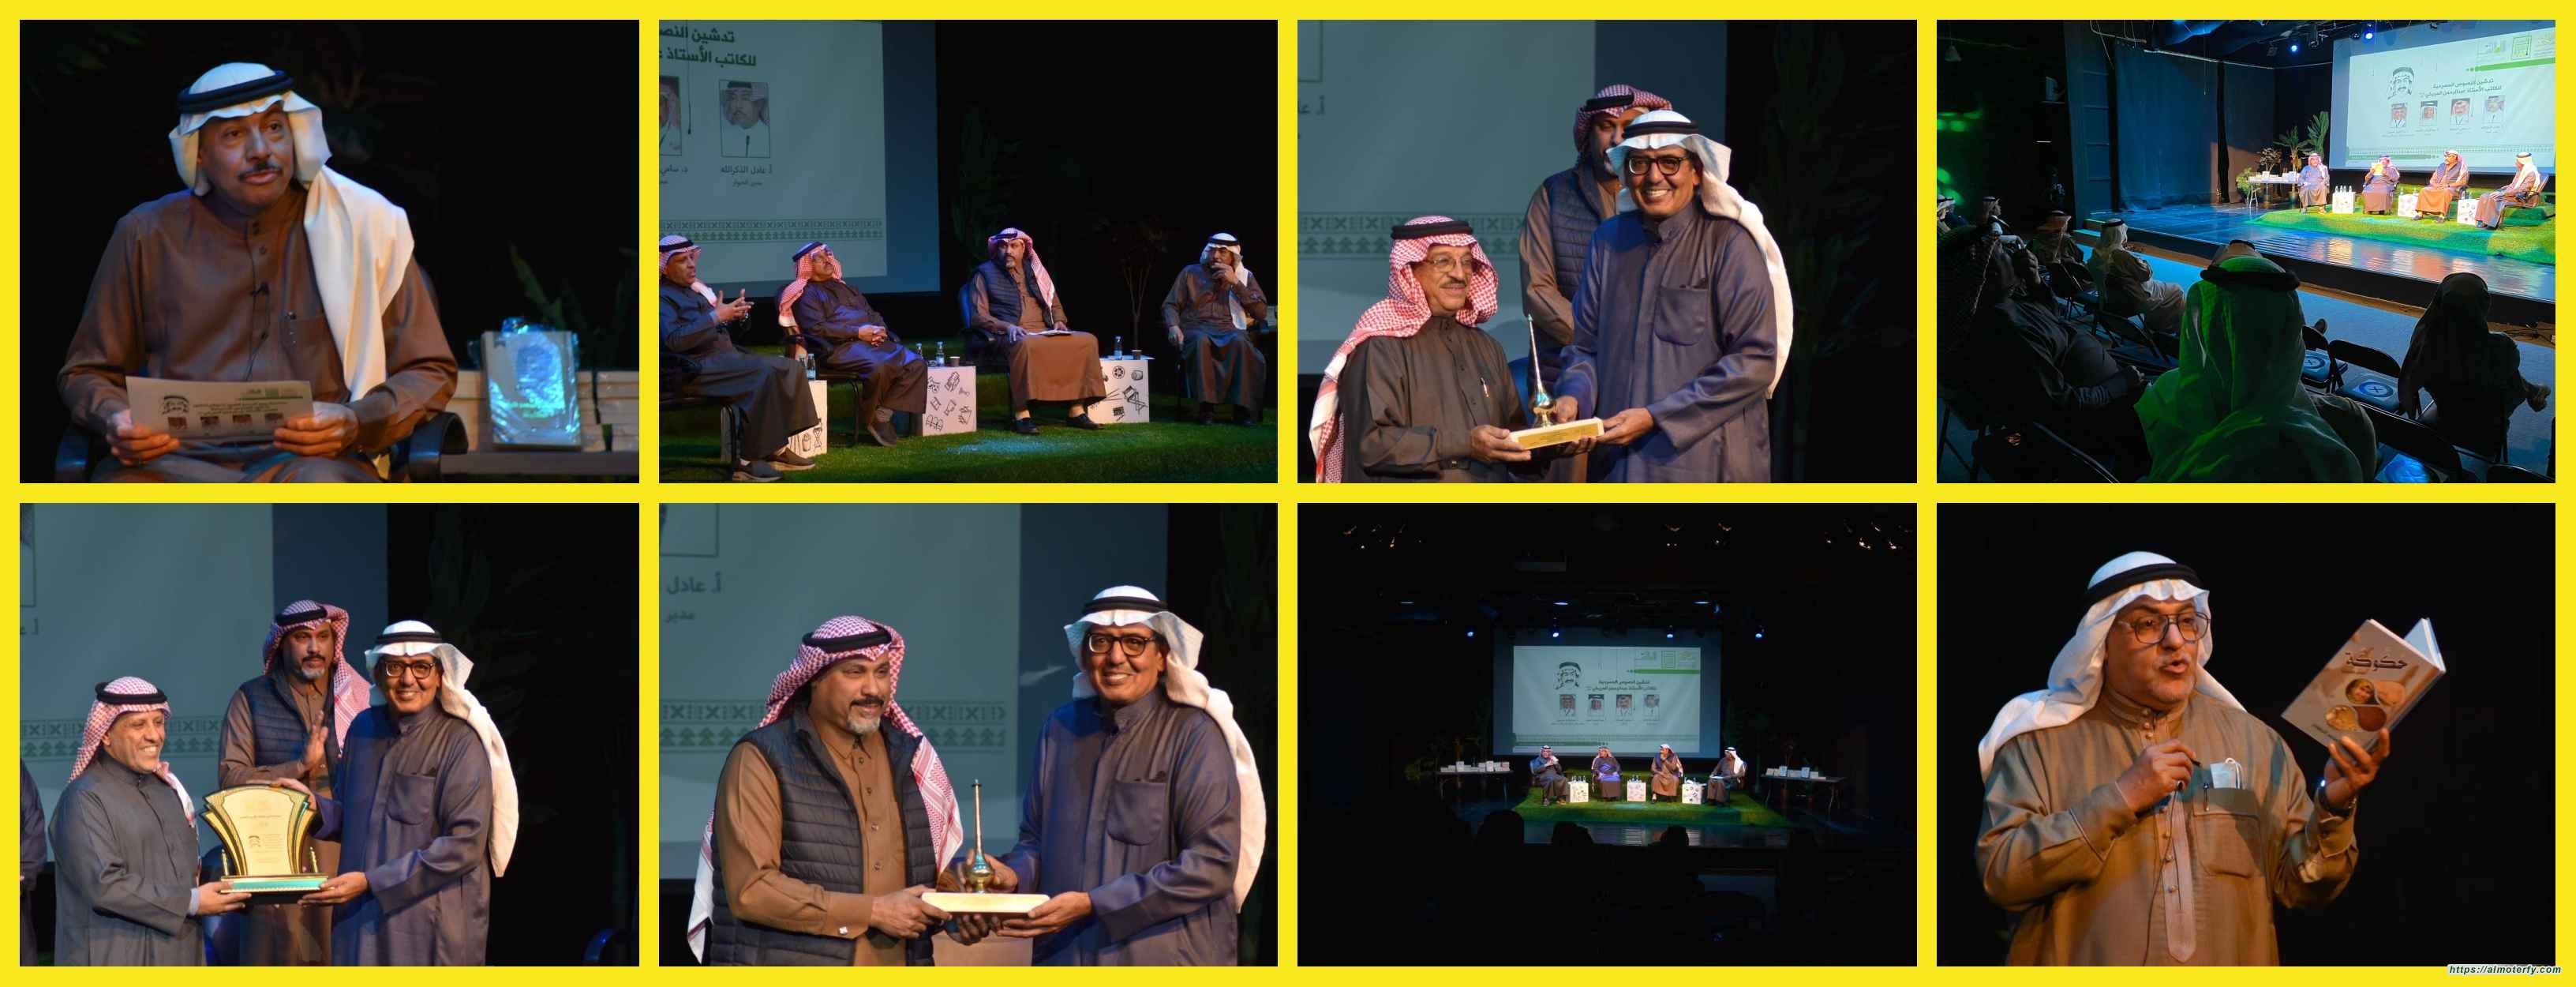 حضور وتفاعل في أمسية (تدشين النصوص المسرحية للكاتب عبدالرحمن المريخي) بثقافة وفنون الأحساء